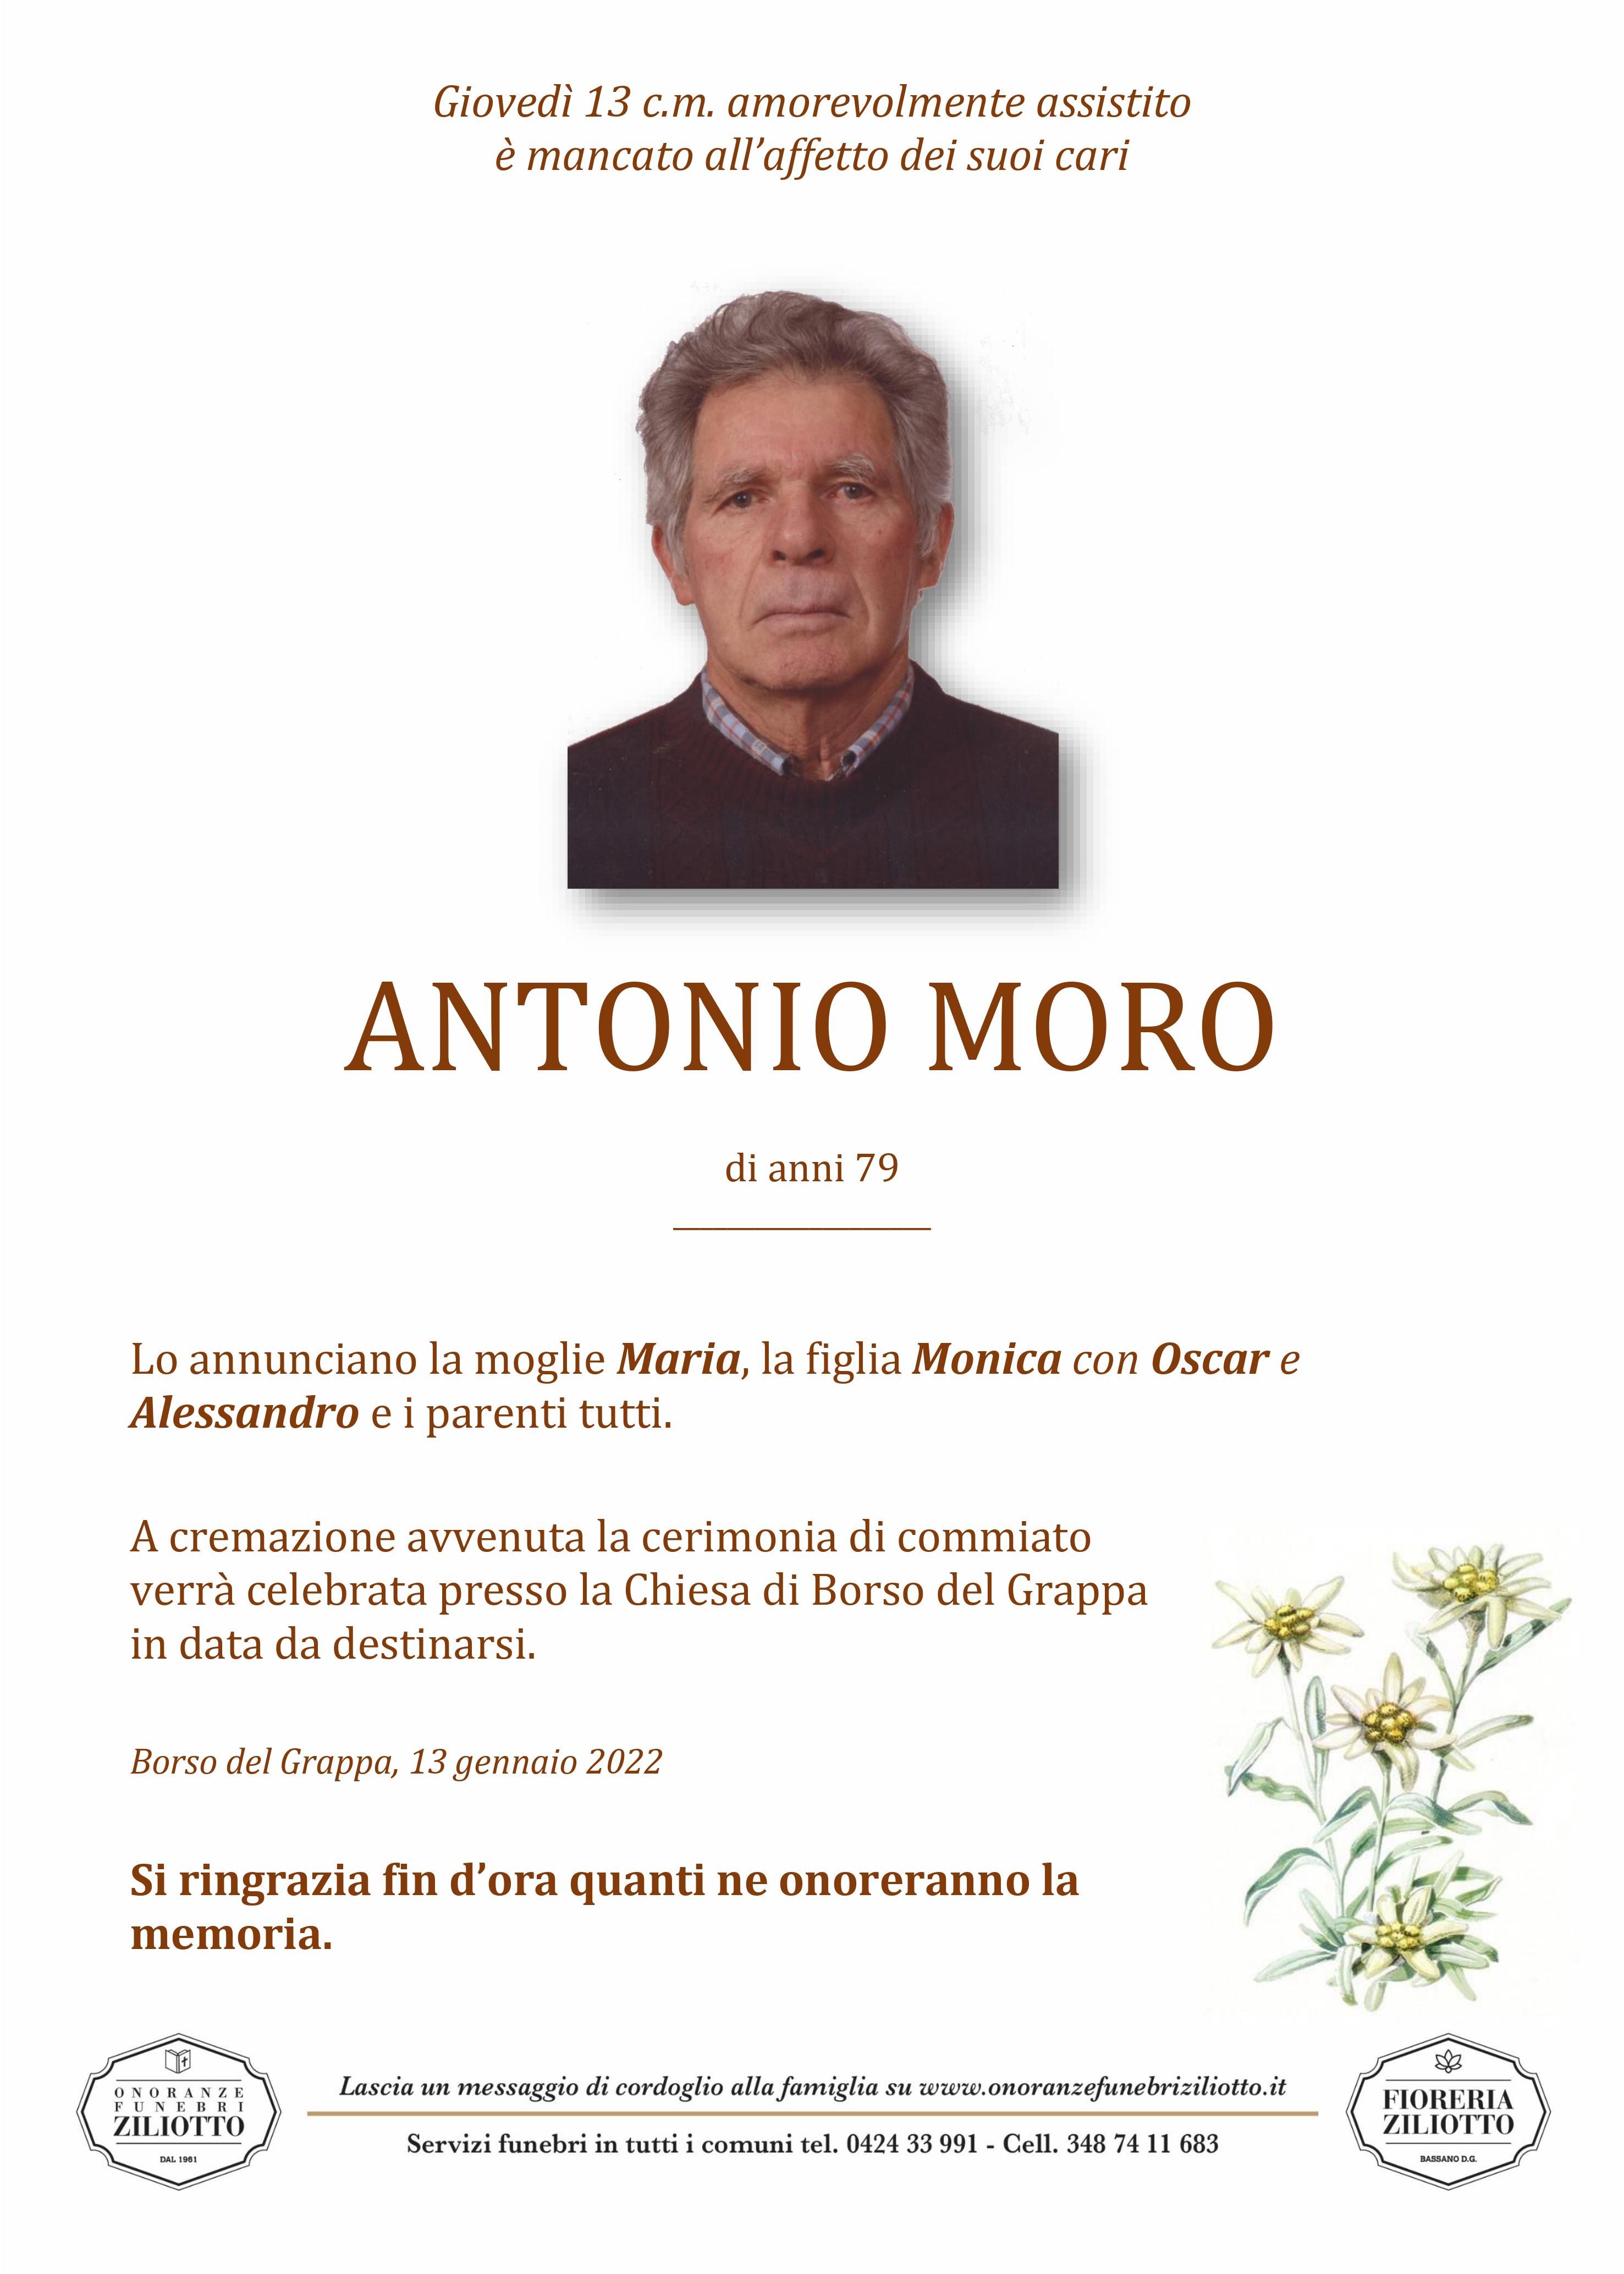 Antonio Moro - 79 anni - Borso del Grappa